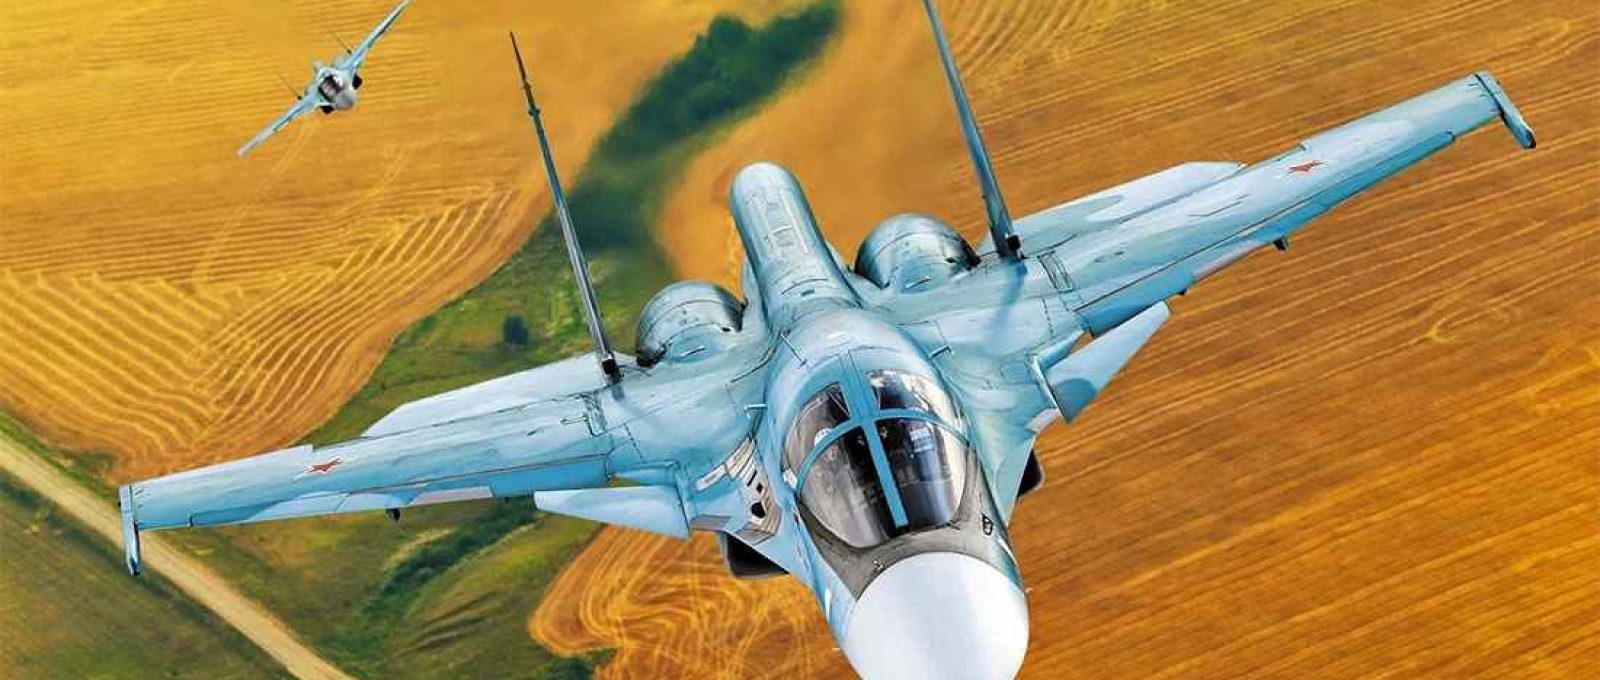 Caça Su-34 da Força Aérea Russa (Creative Commons).